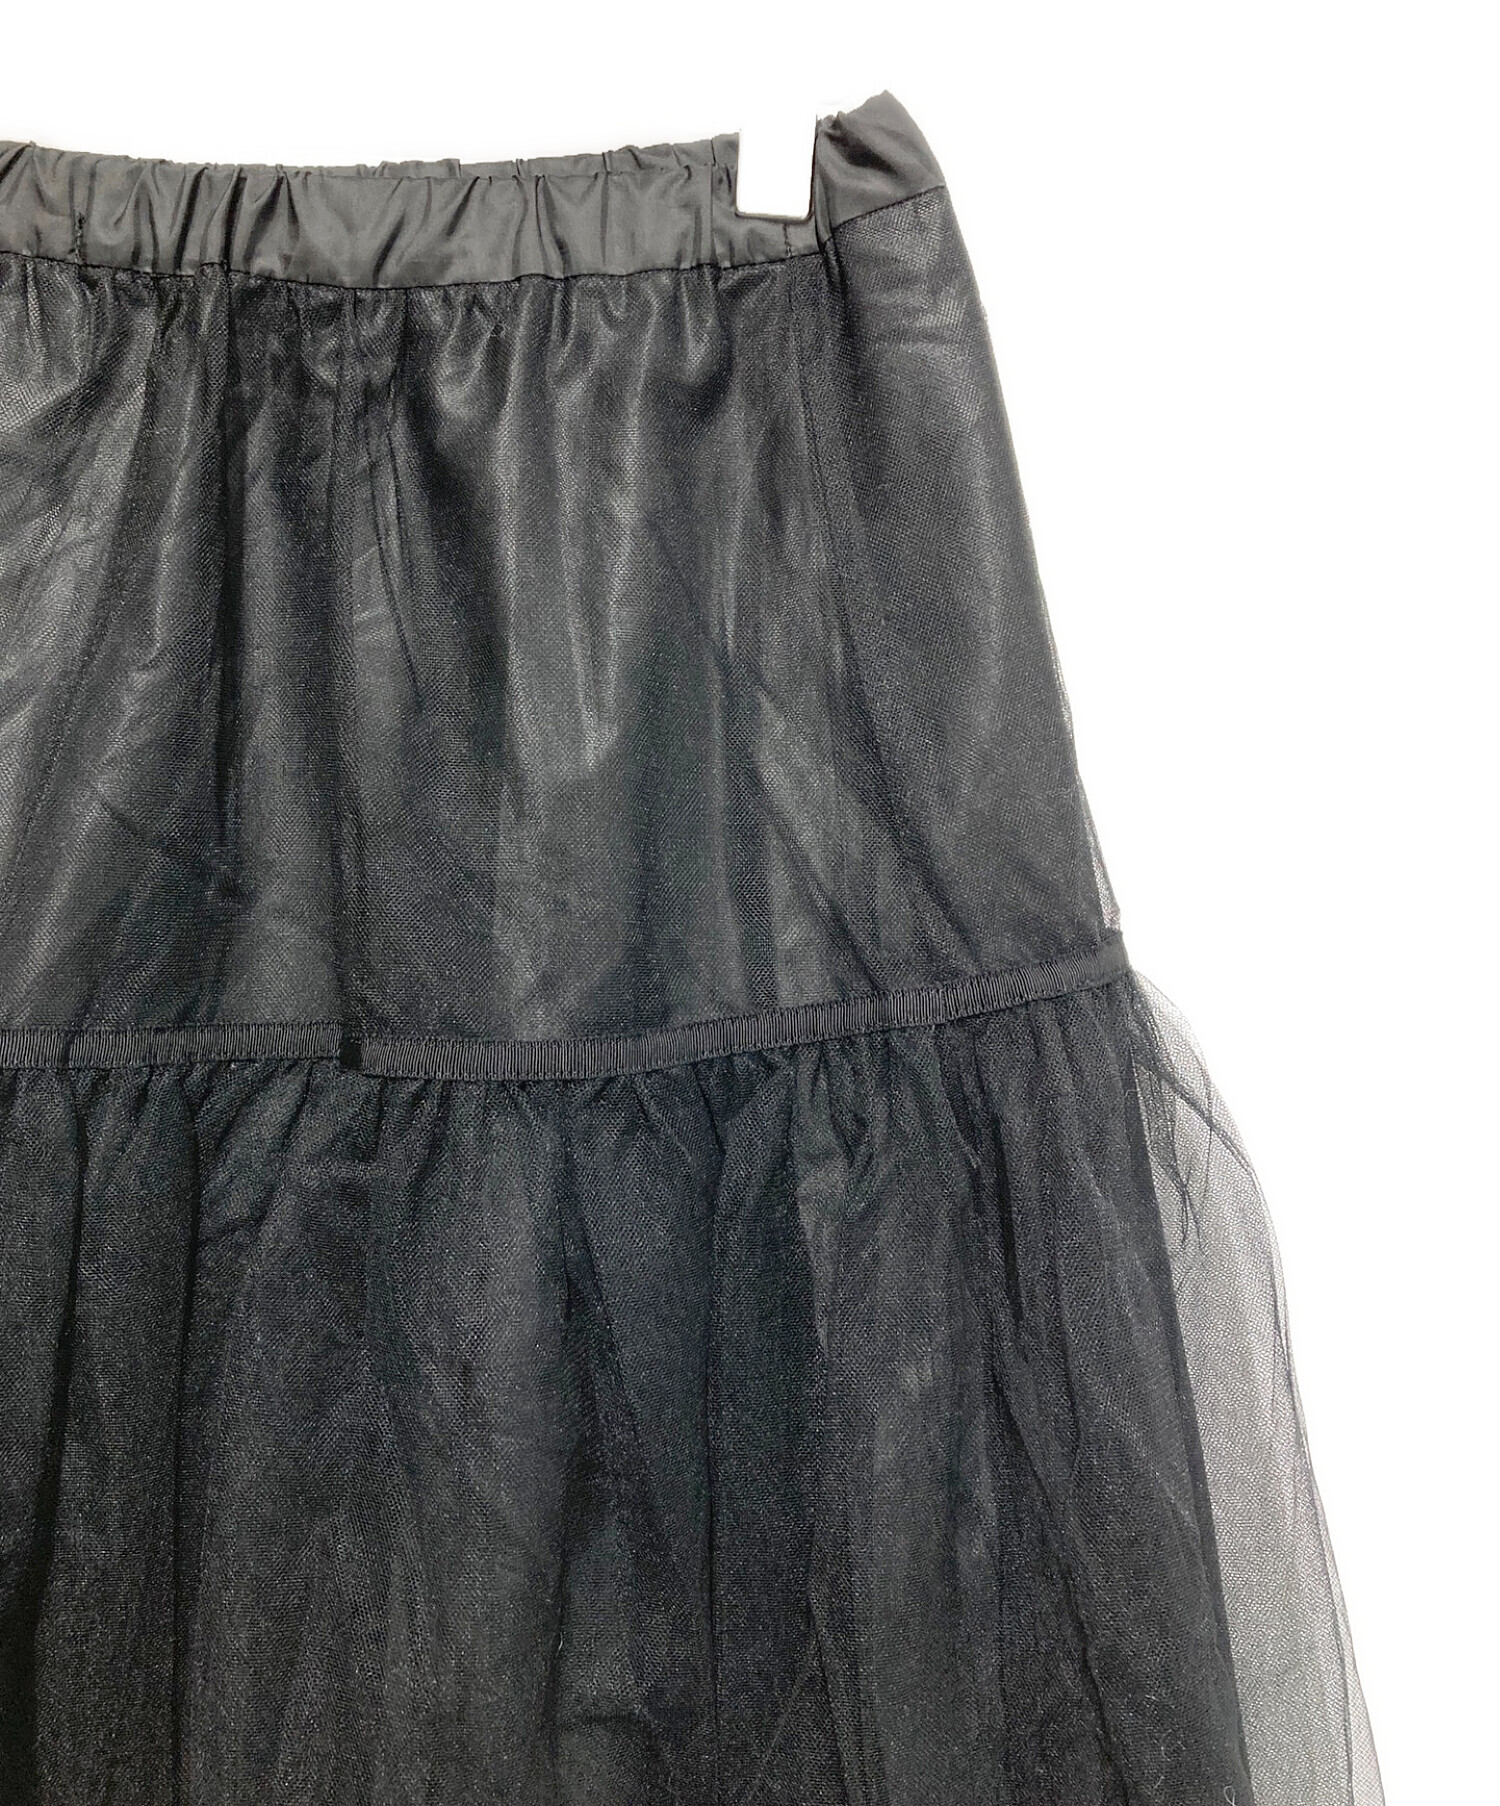 中古・古着通販】IENA (イエナ) パニエスカート ブラック サイズ:SIZE